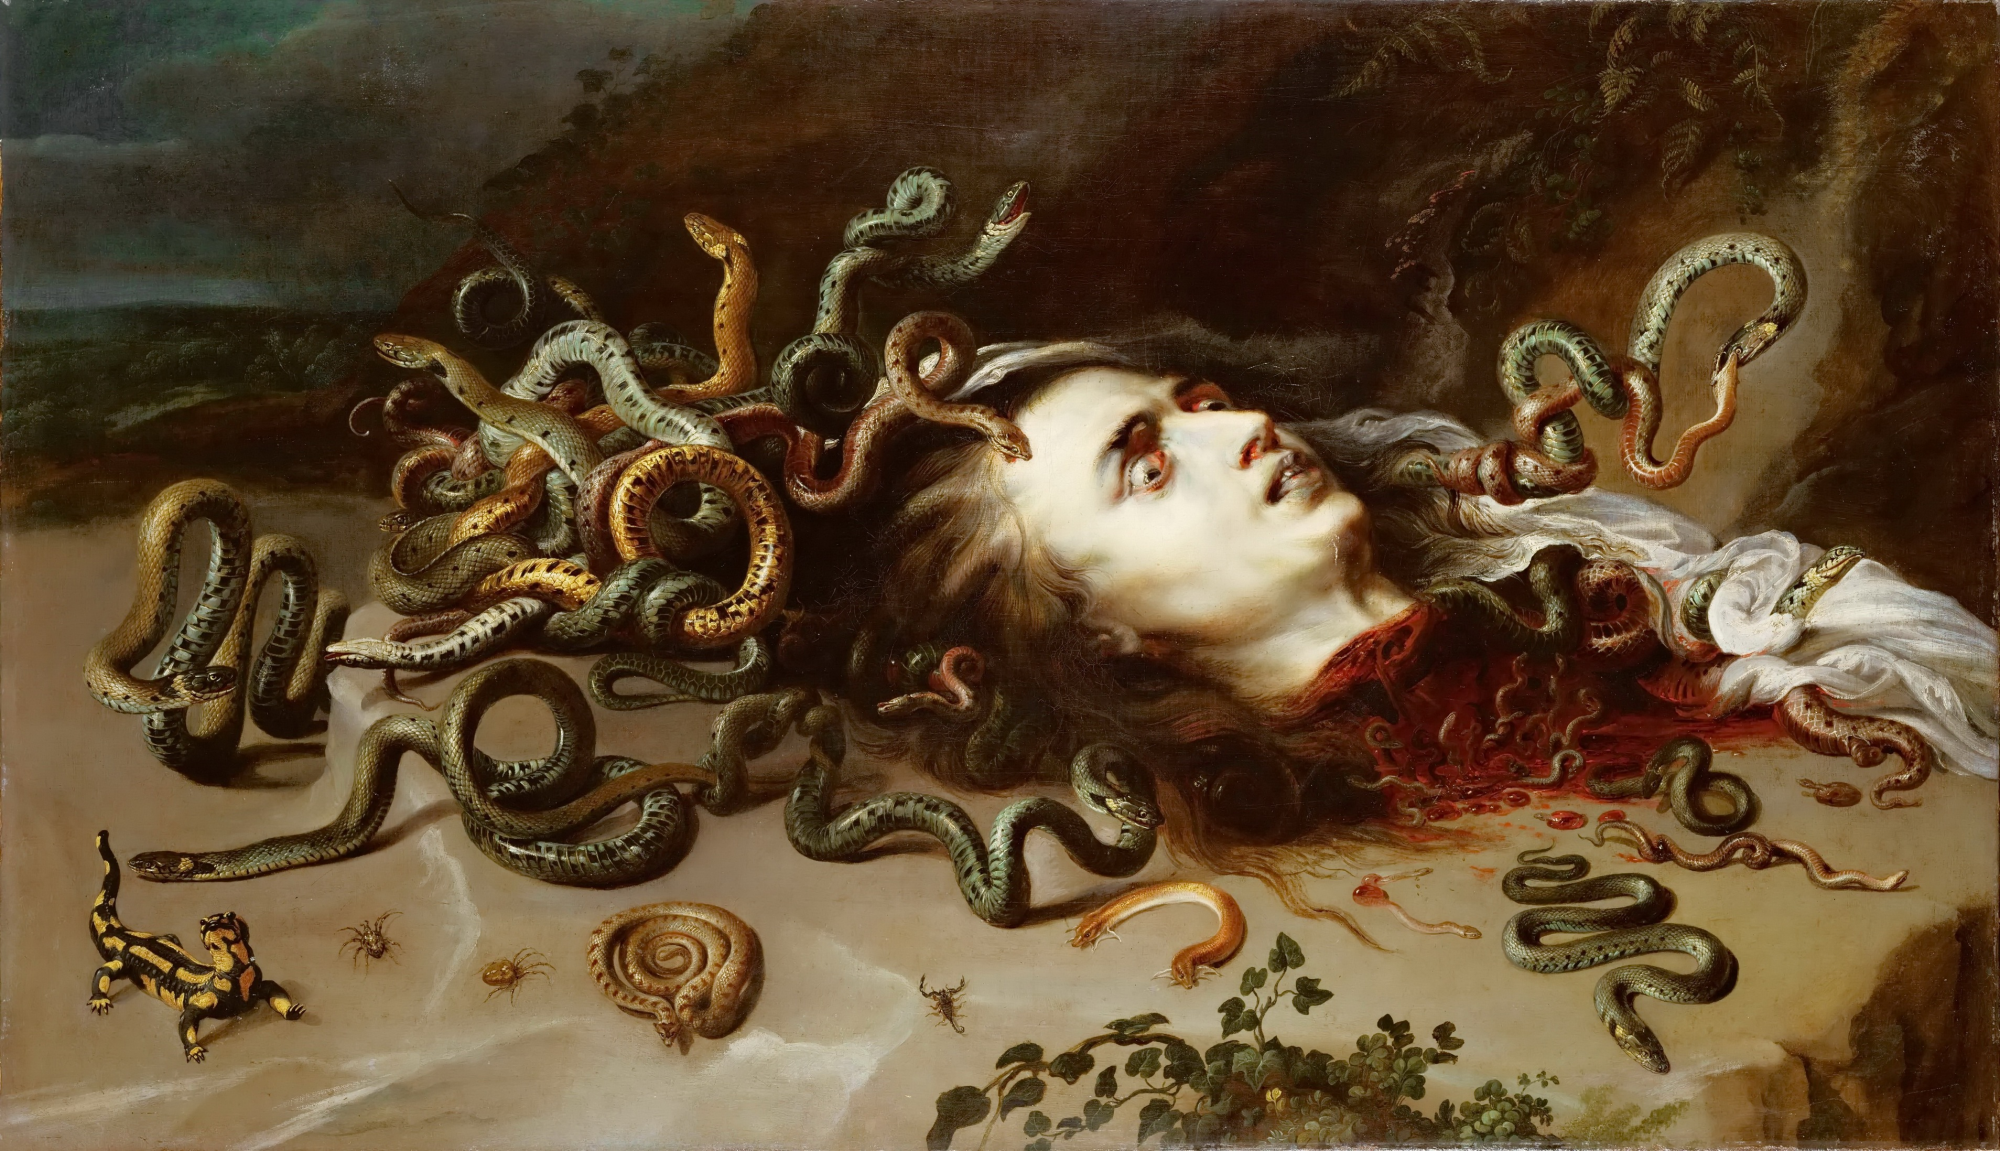 De Verdad El sendero Comportamiento Cabeza de medusa - Peter Paul Rubens - Historia Arte (HA!)